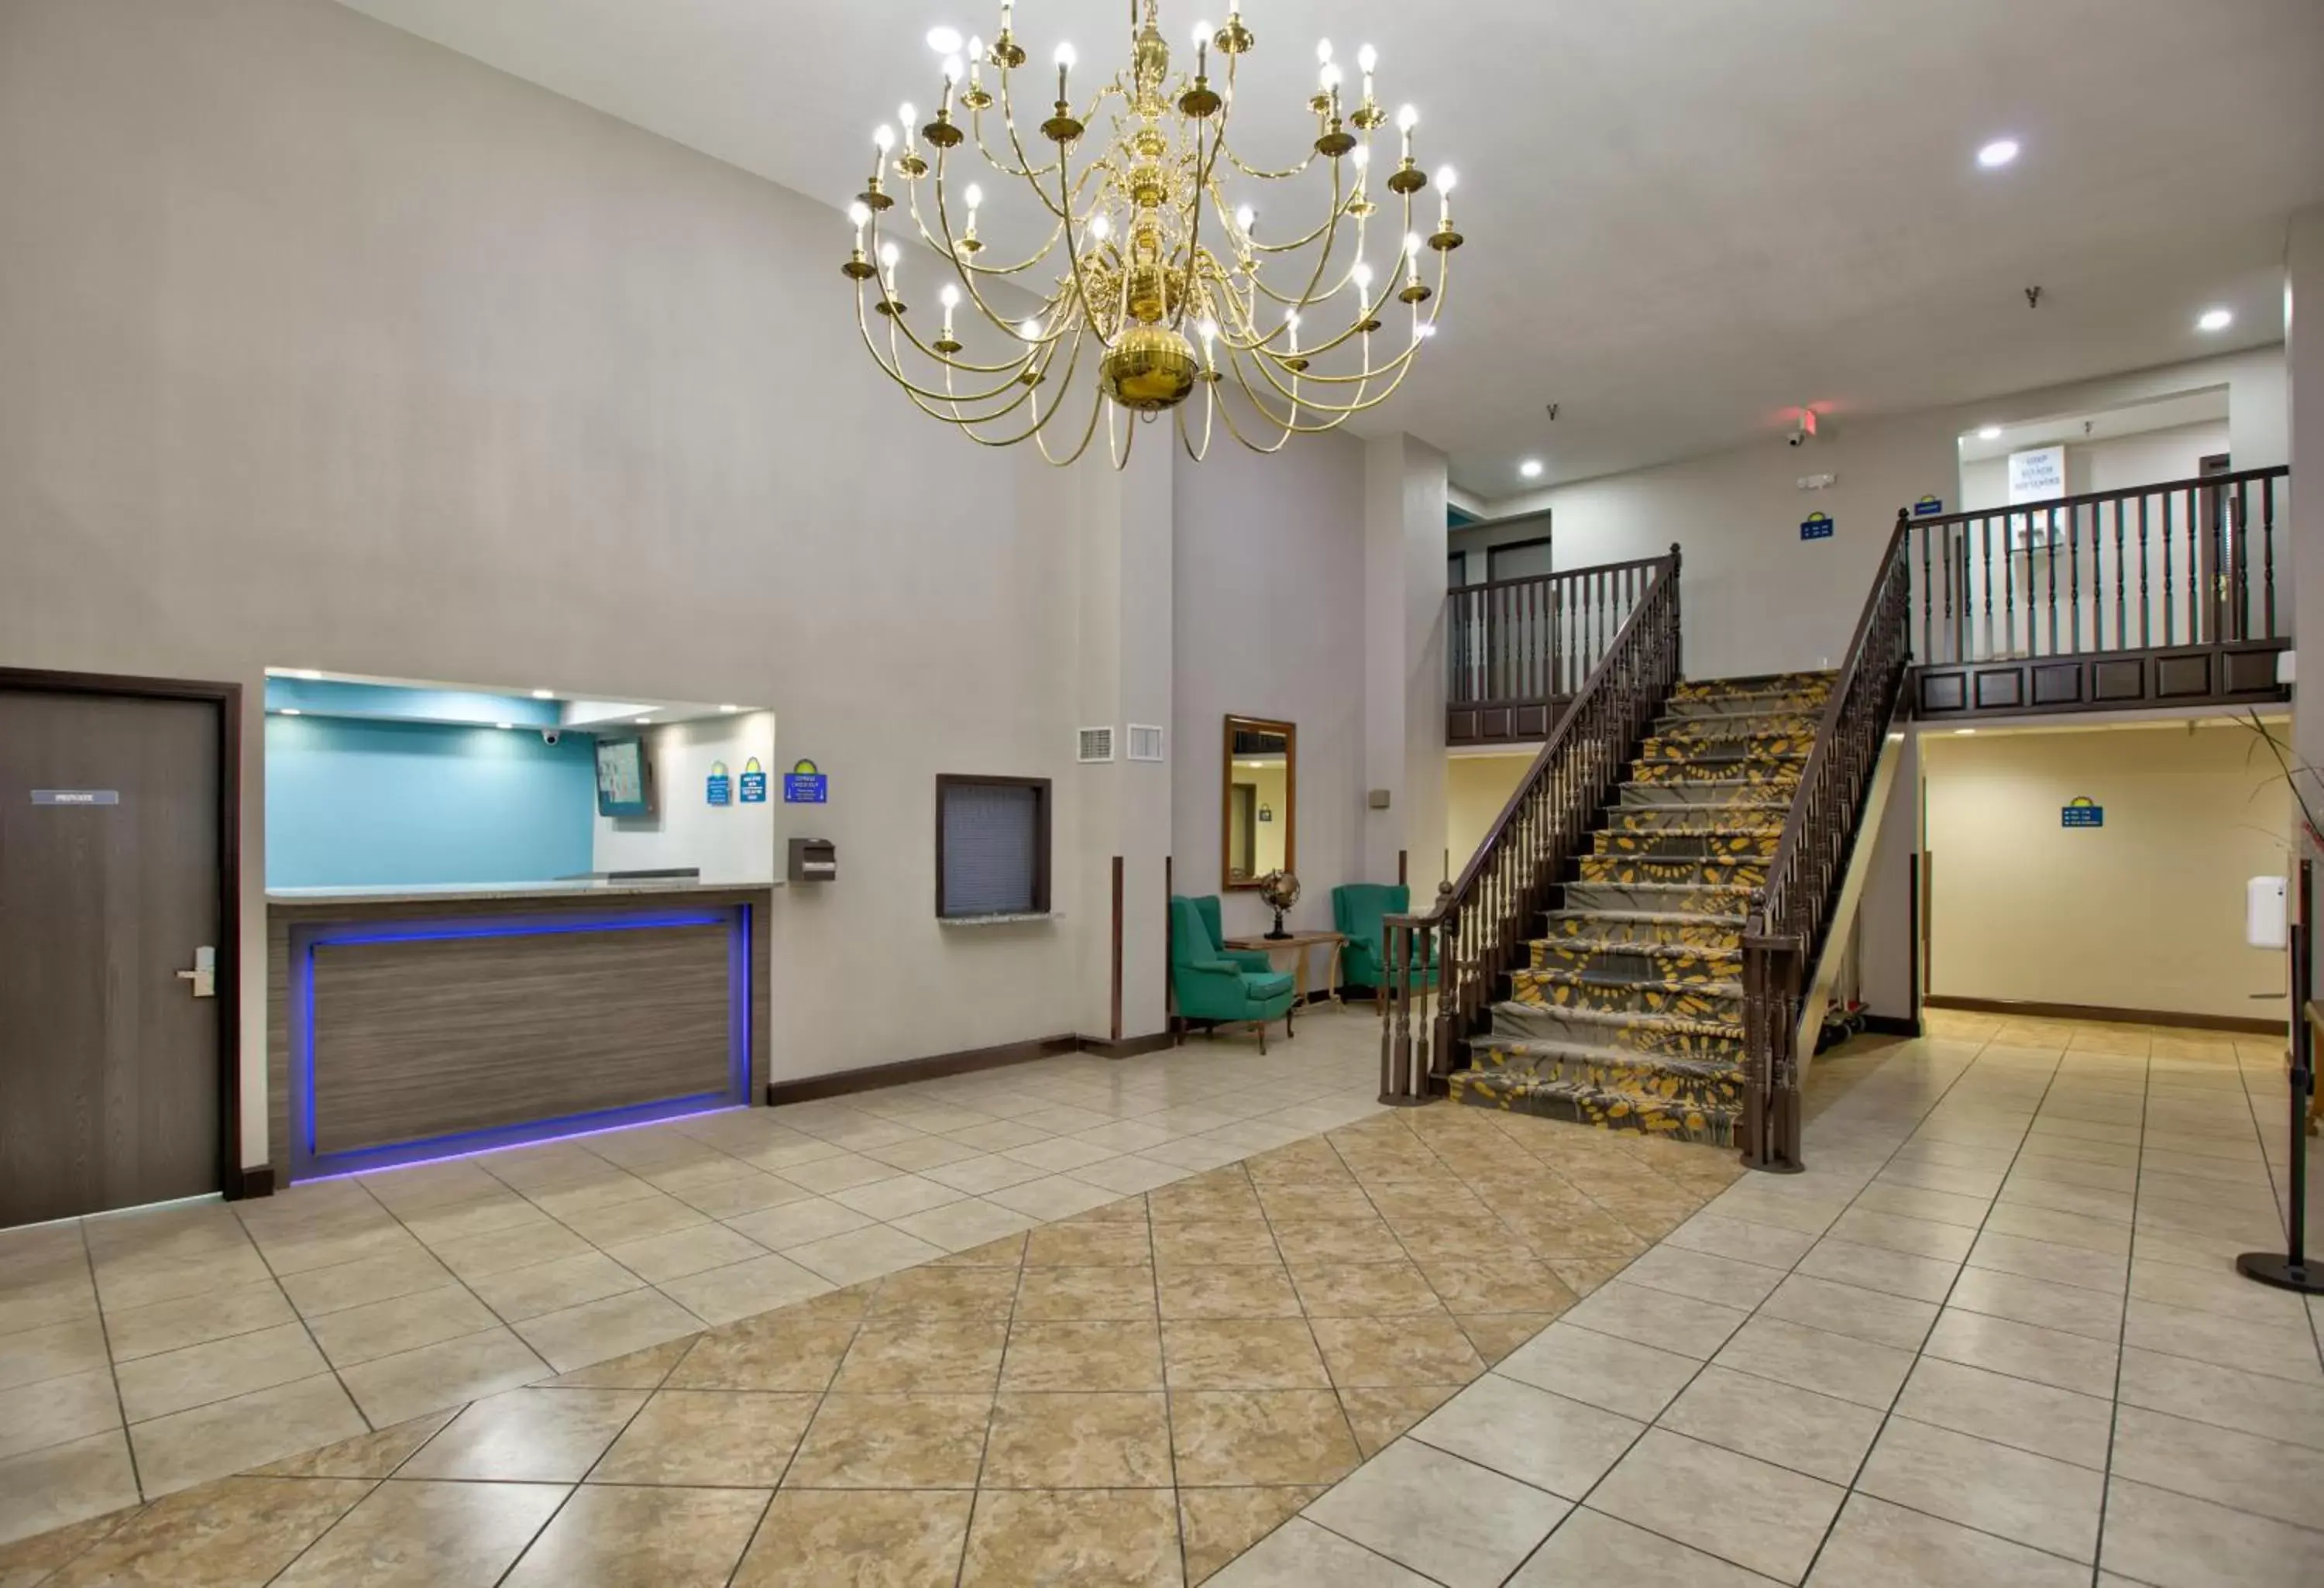 Lobby or reception, Lobby/Reception in Days Inn by Wyndham Tunica Resorts